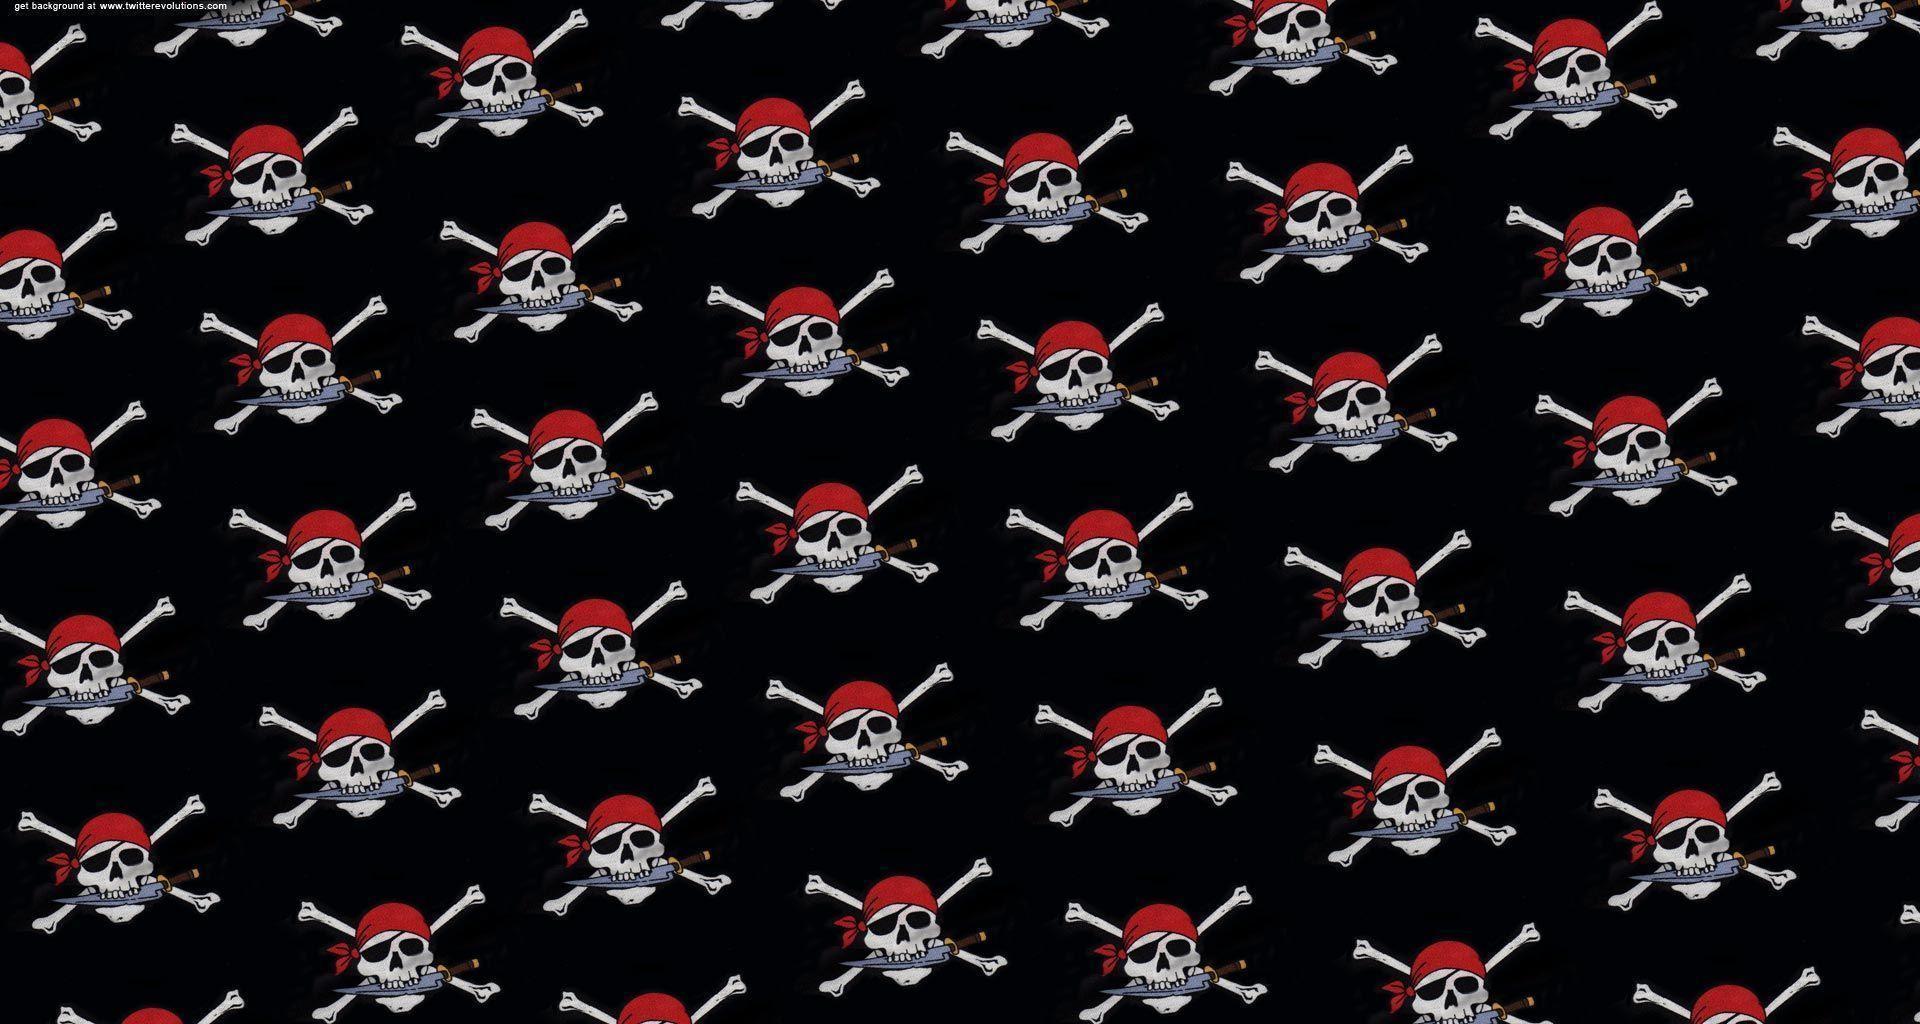 Pirate skulls Twitter background pattern. Twitter background